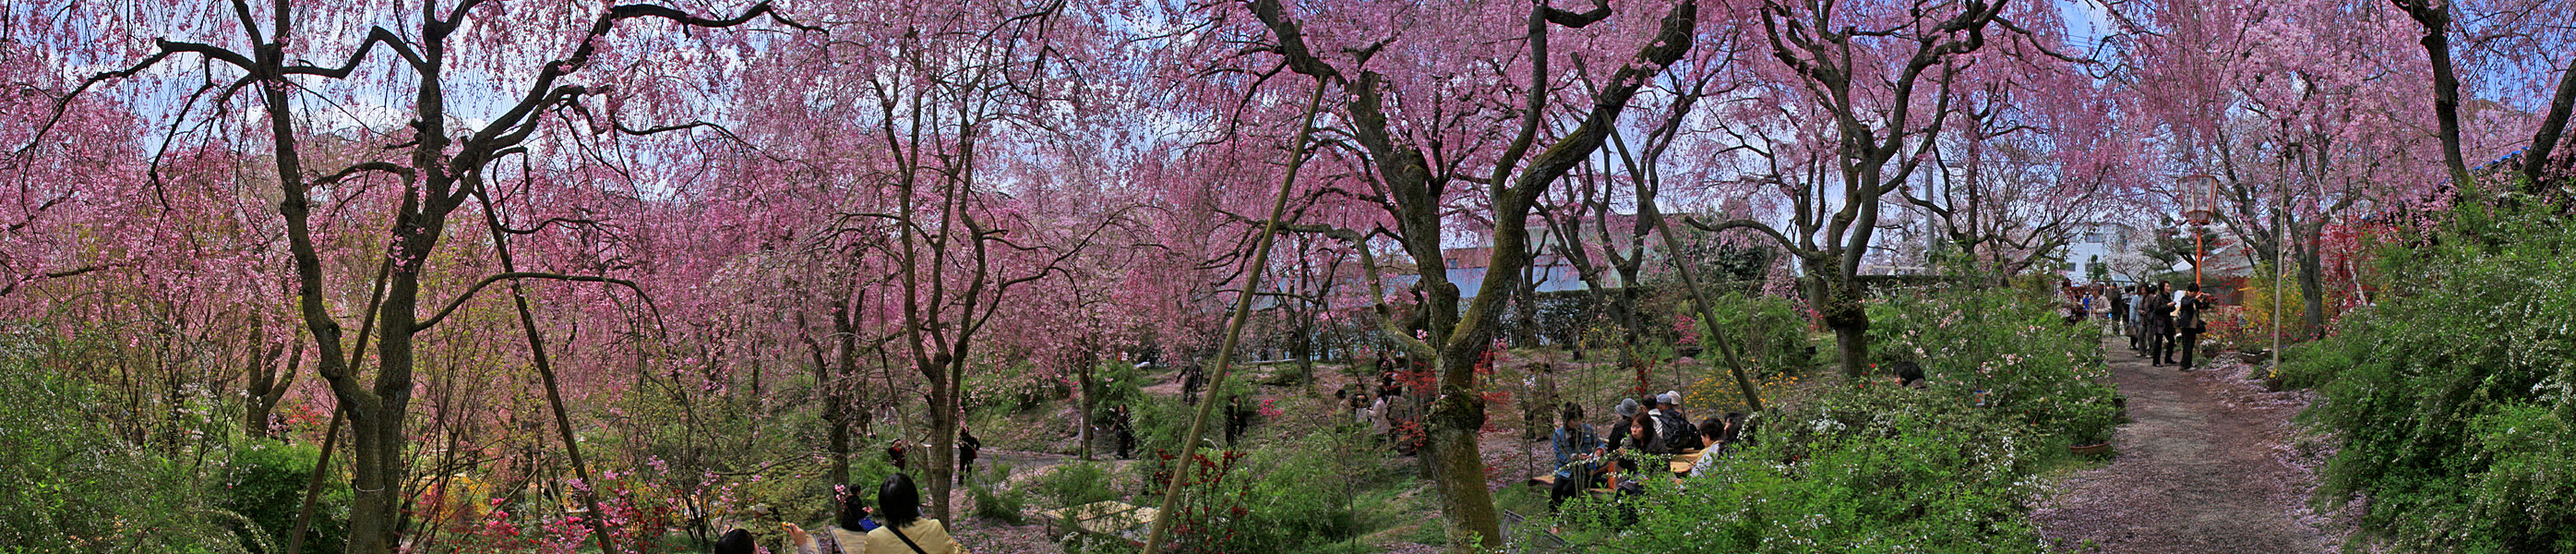 京都の桜他 パノラマ写真 1 壁紙 日々駄文